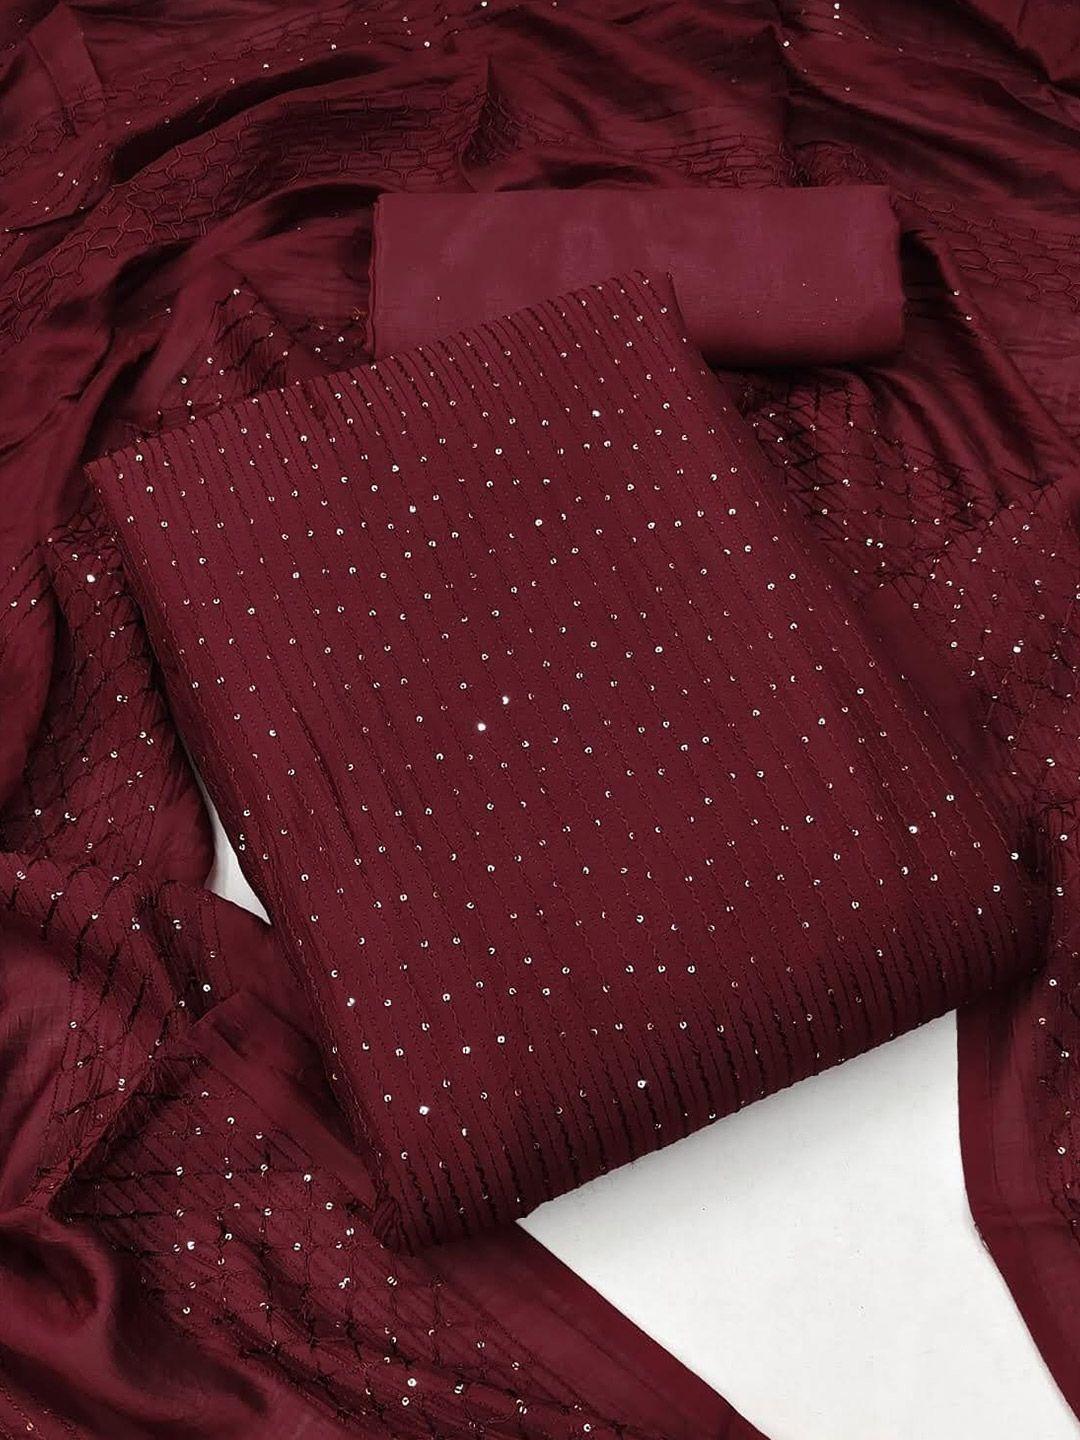 zeepkart striped embellished sequinned detail unstitched dress material